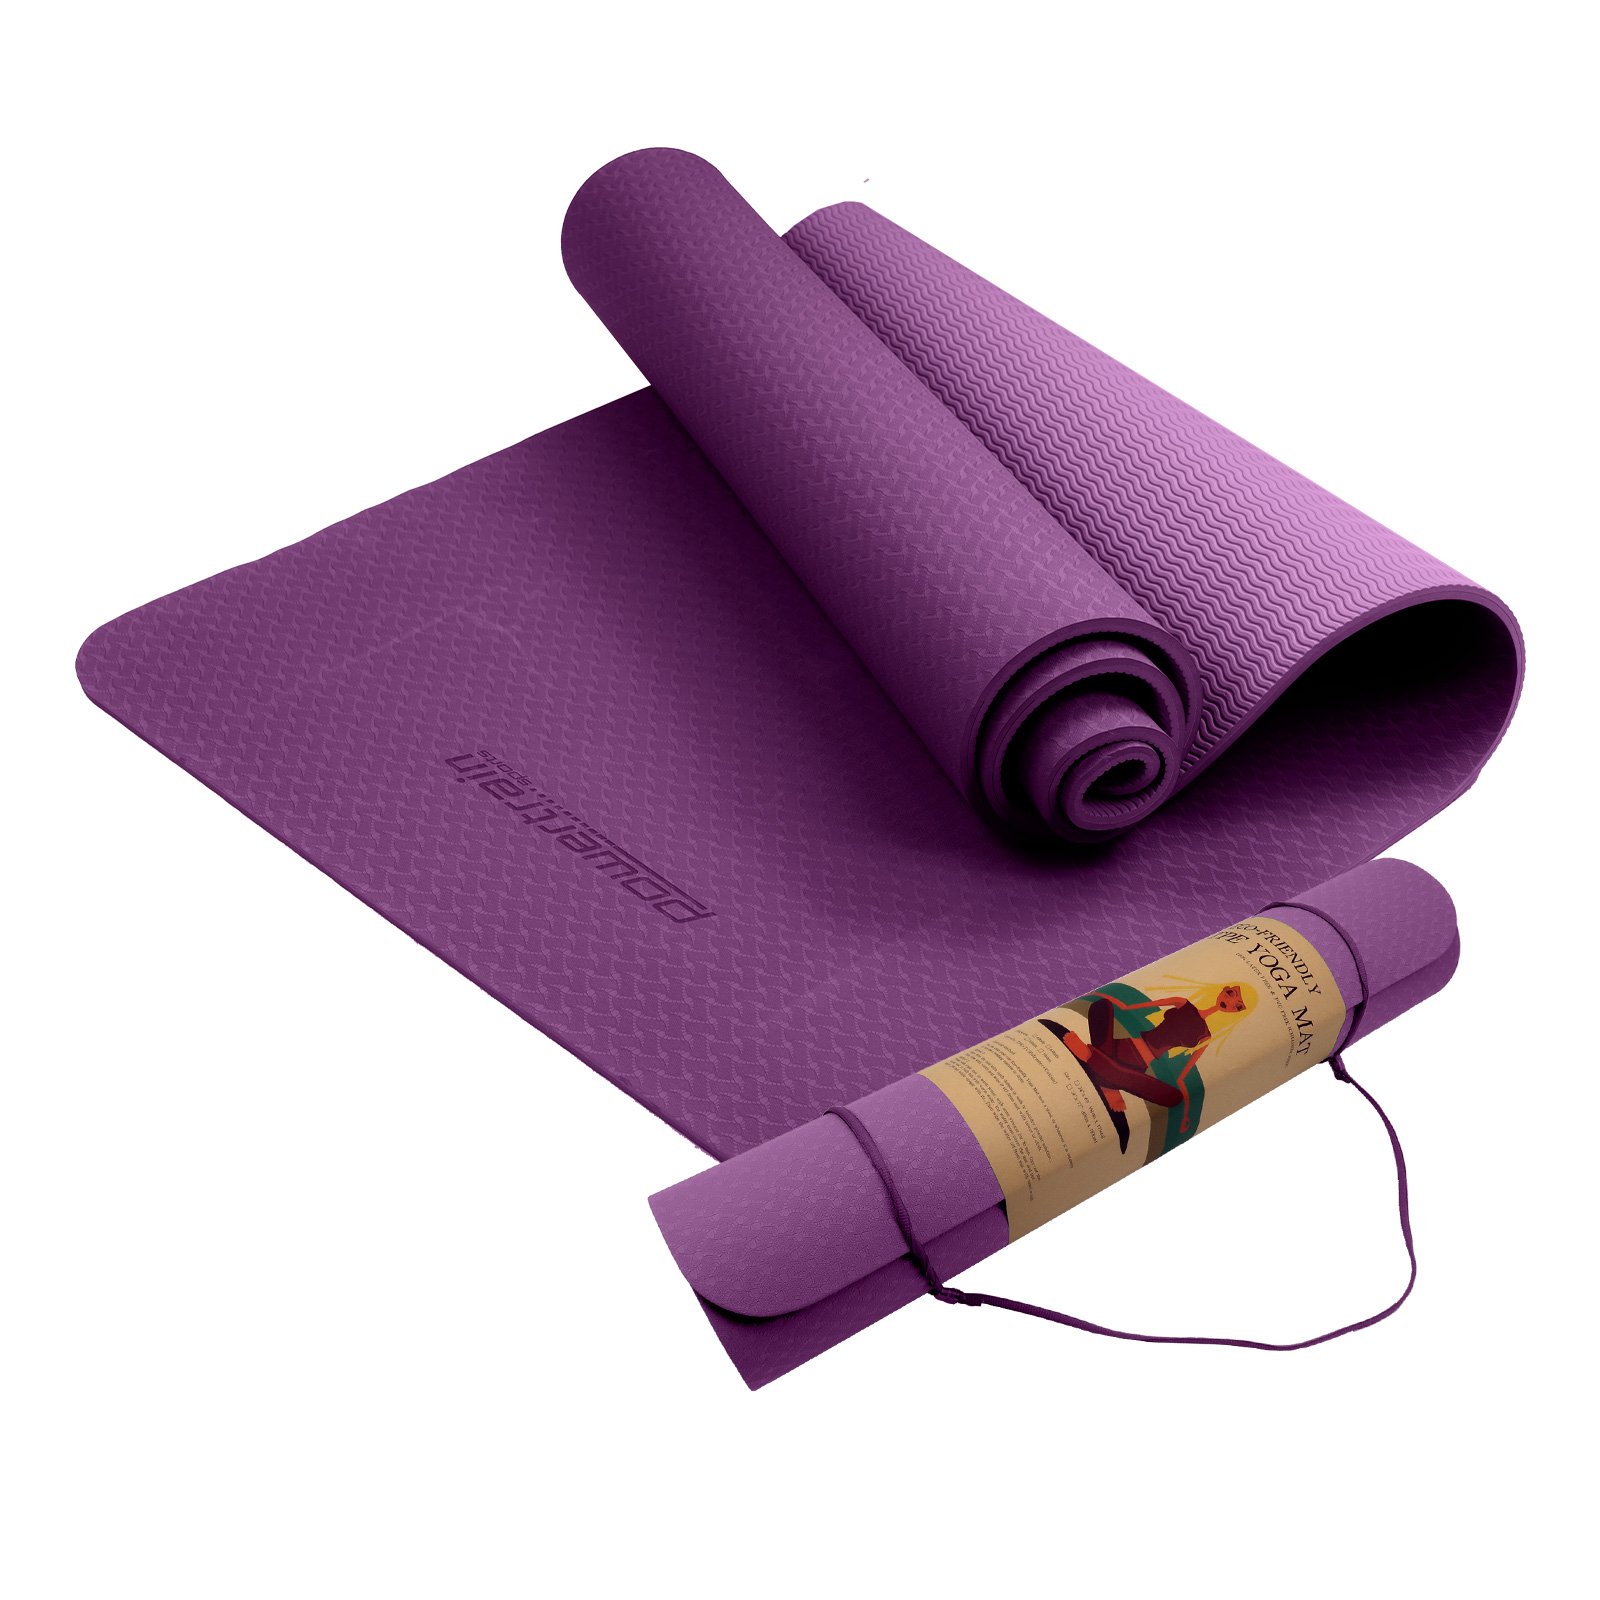 Powertrain Eco-Friendly TPE Yoga Pilates Exercise Mat 6mm - Purple 1